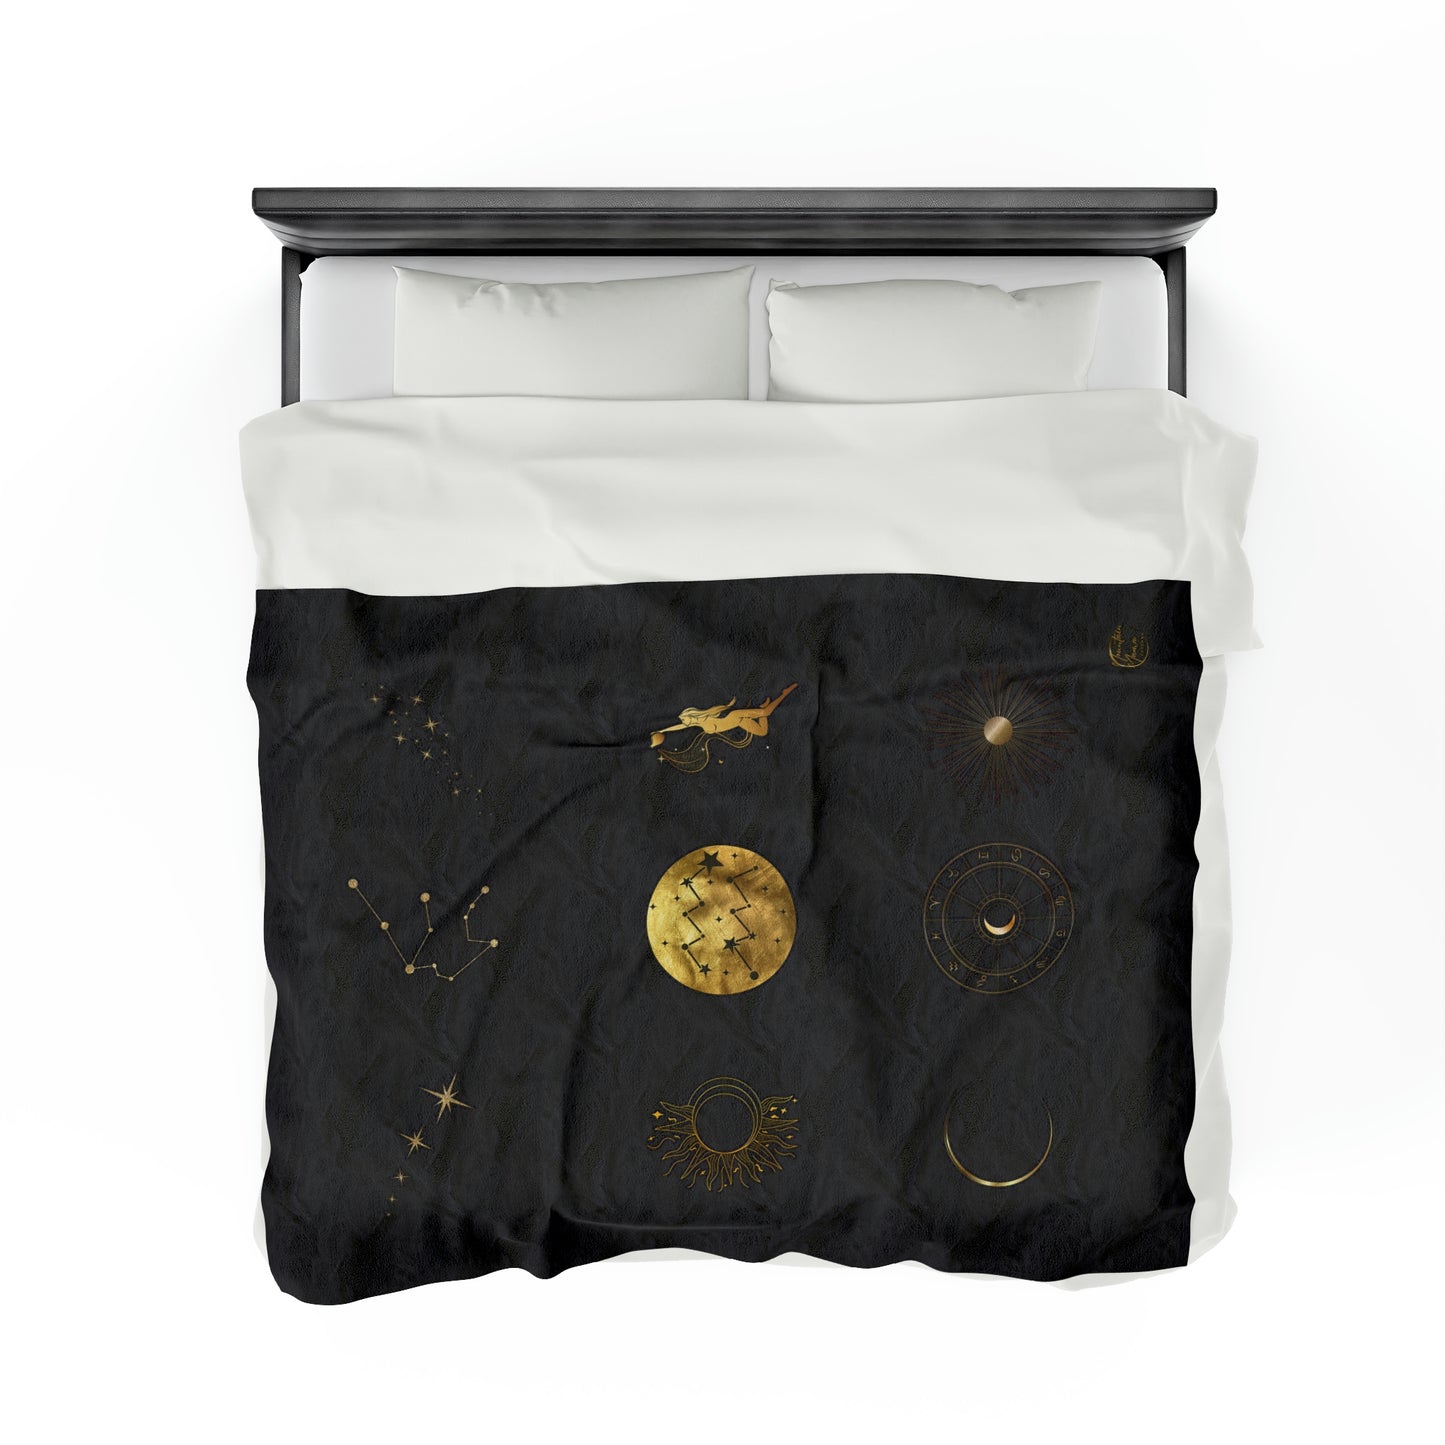 Celestial Age of Aquarius Black & Gold Velveteen Plush Blanket